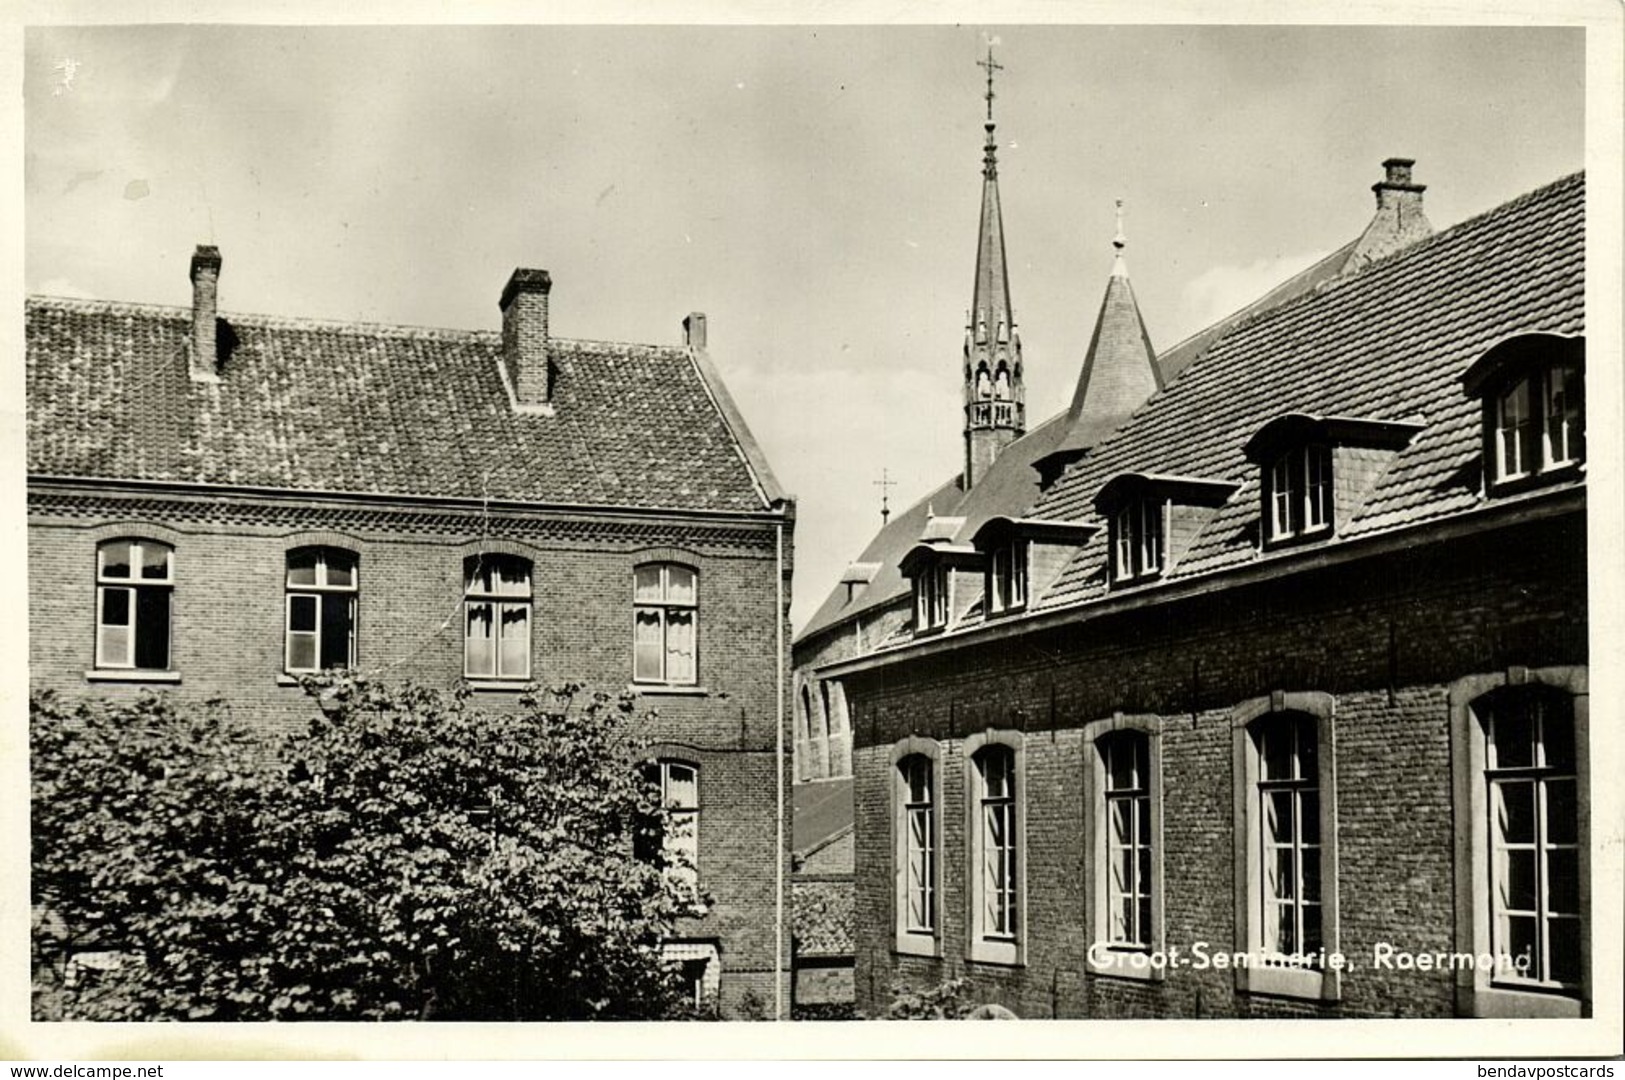 Nederland, ROERMOND, Groot-Seminarie (1950s) Ansichtkaart - Roermond